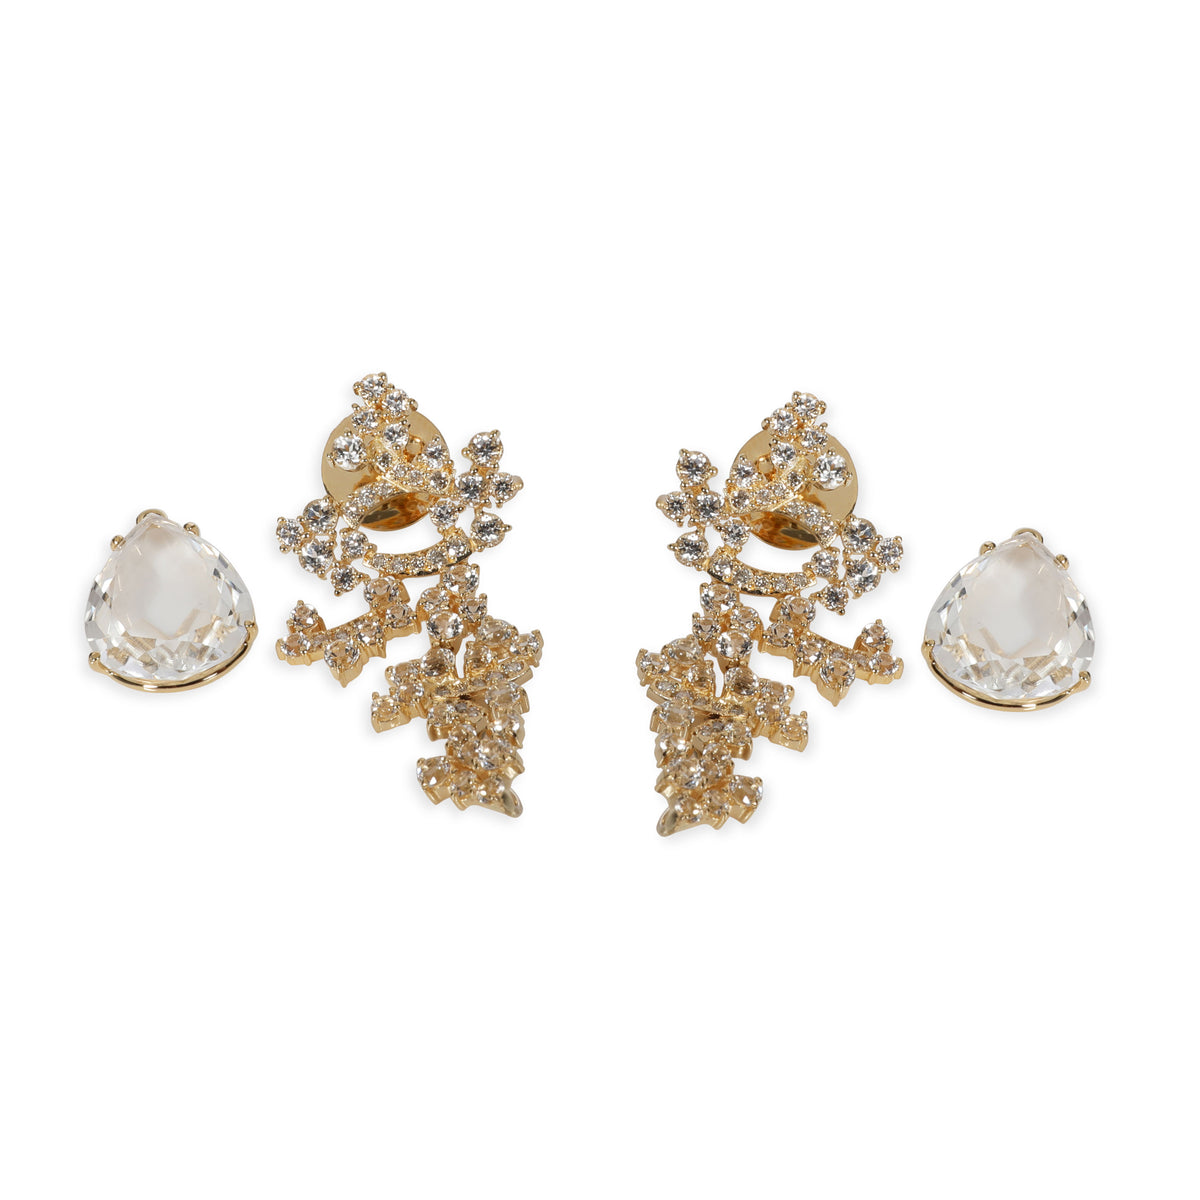 White Topaz & Diamond Drop Earrings in 18KT Yellow Gold 0.37 CTW